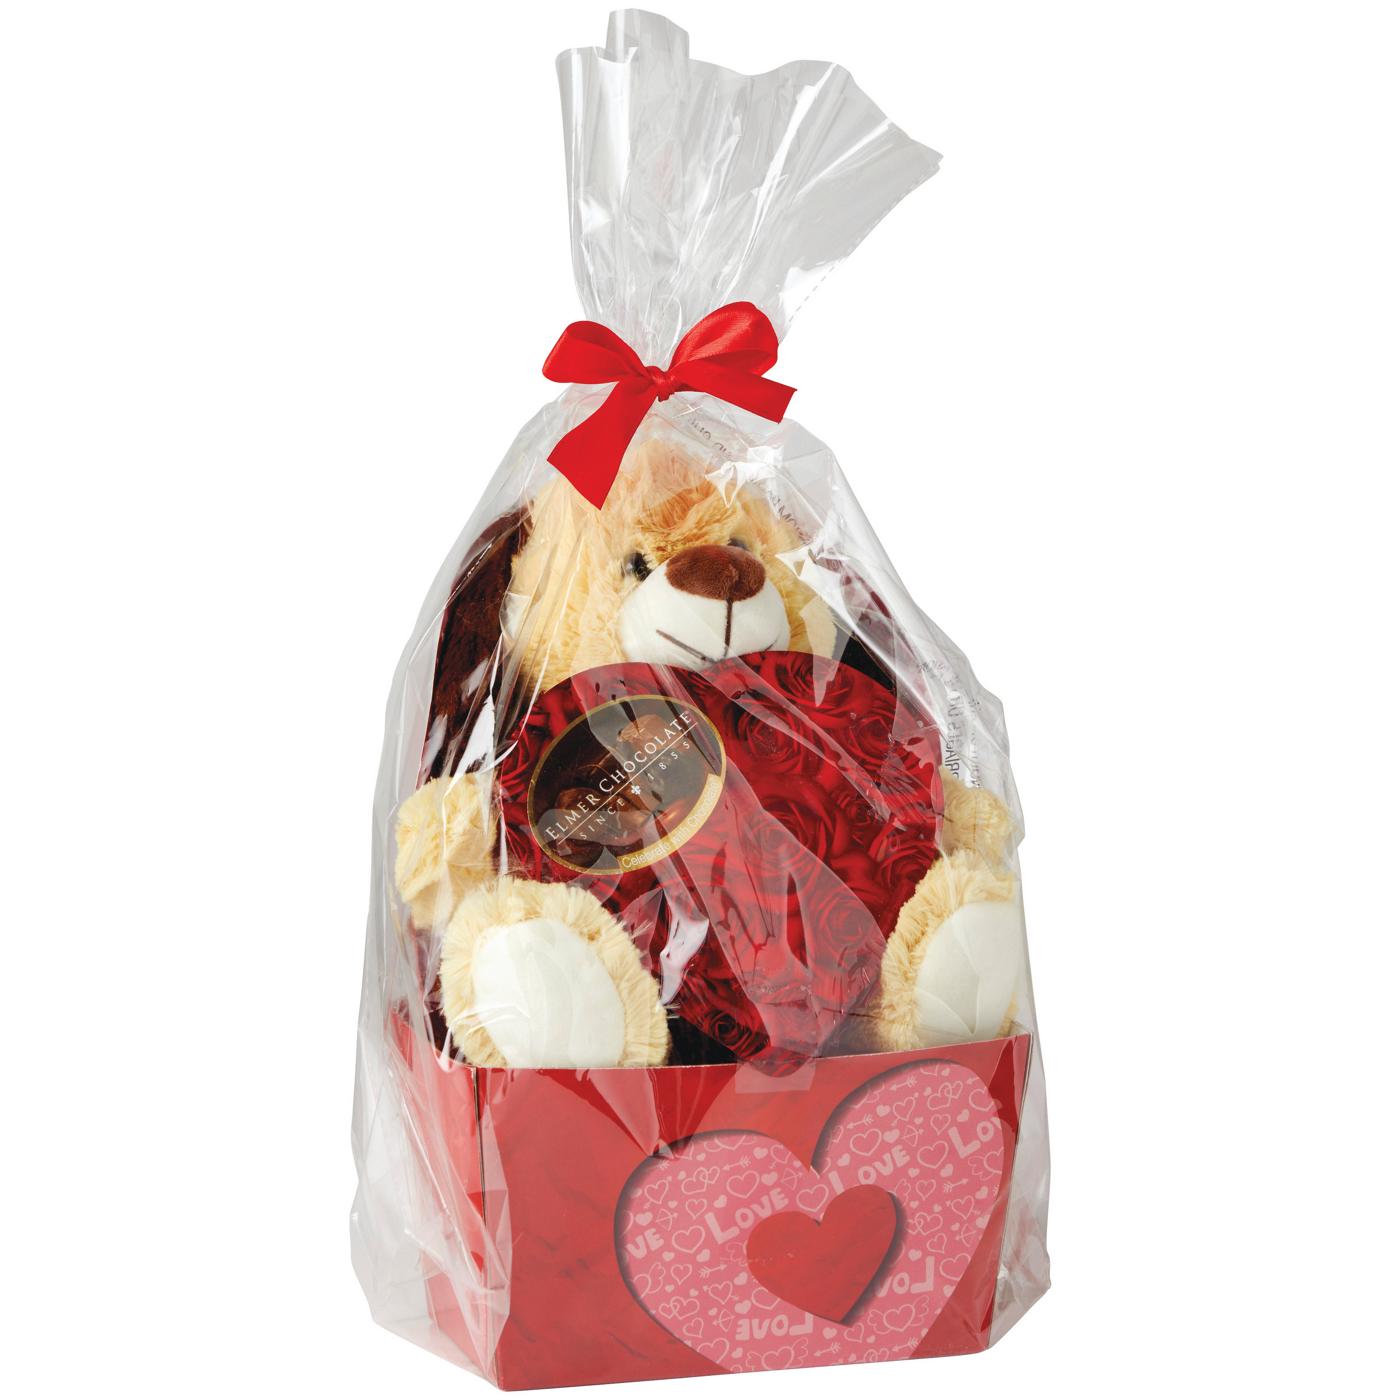 Megatoys Valentine Plush Gift Box with Chocolates; image 1 of 2